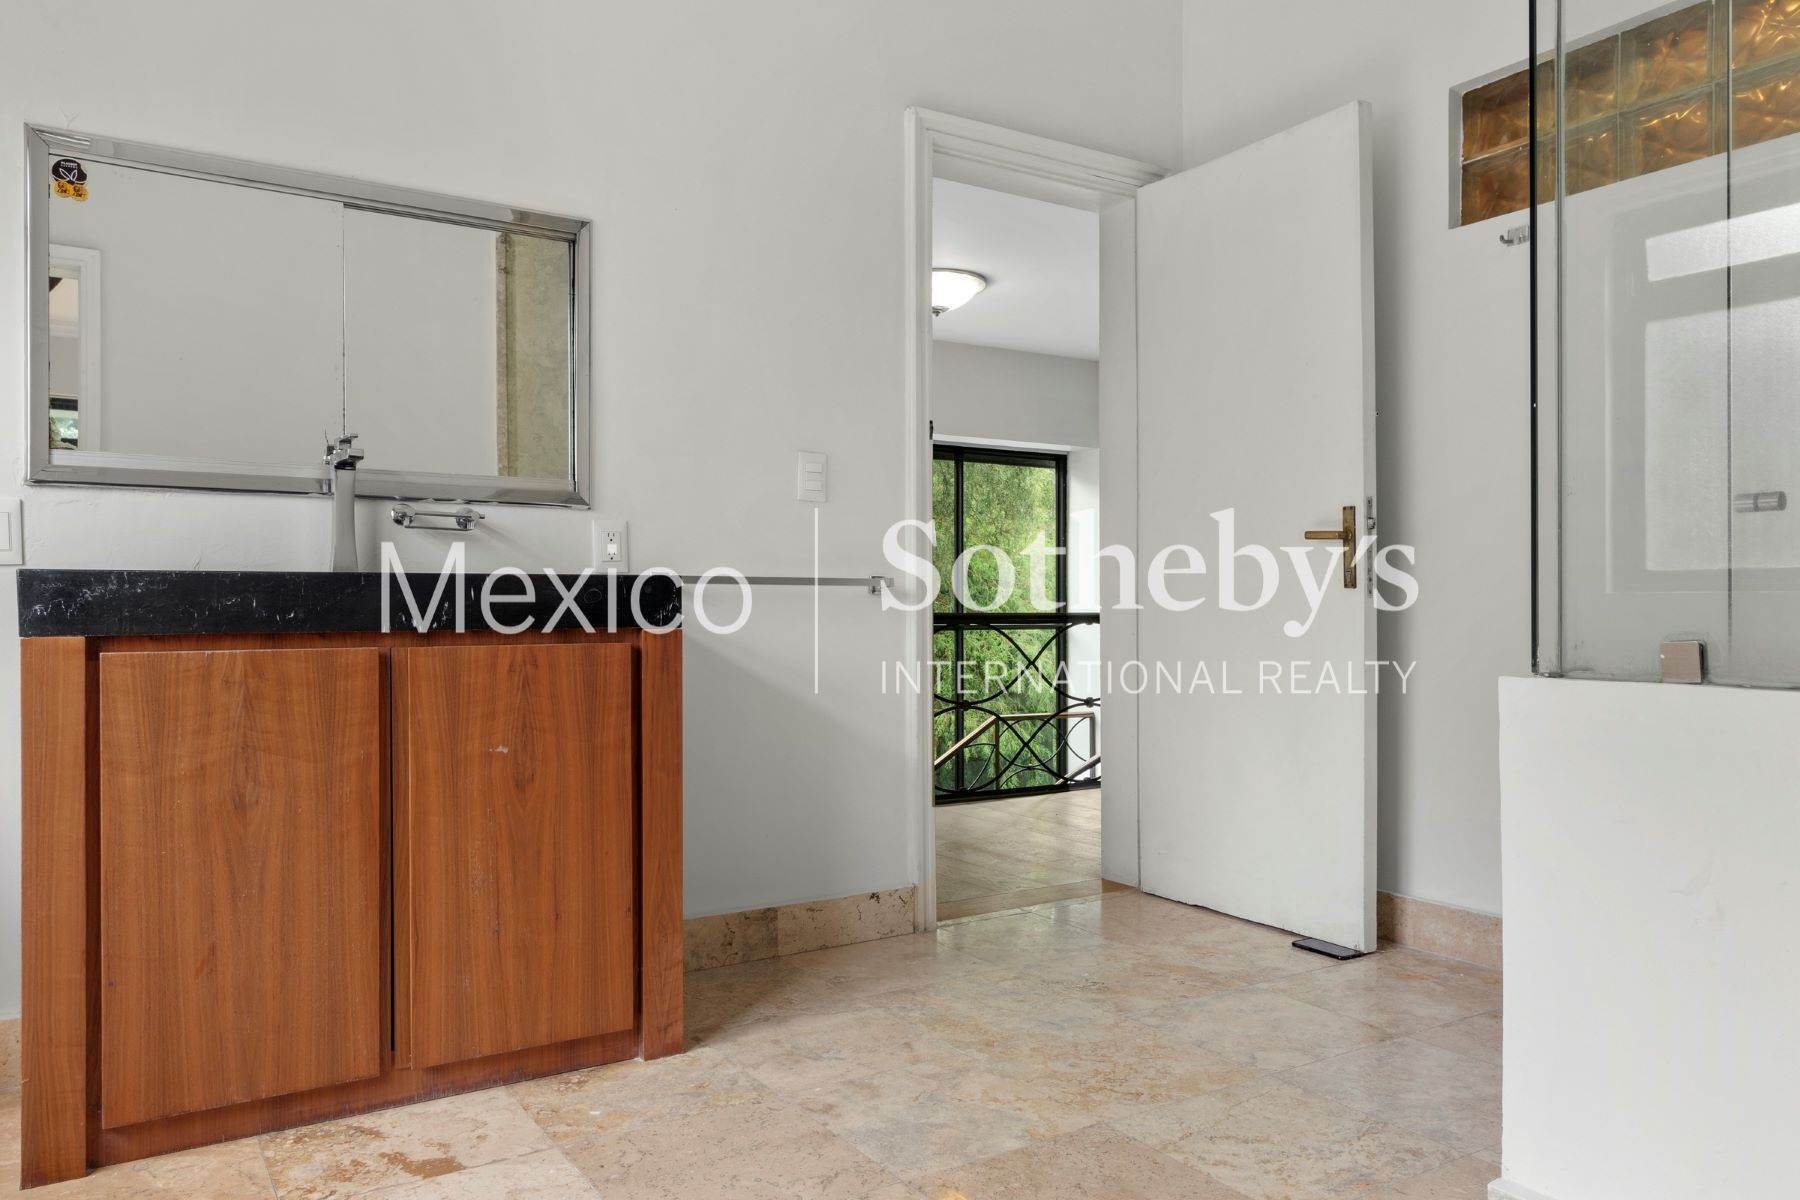 16. Property at Prado Norte 605, Lomas Virreyes Mexico City, Ciudad de Mexico 11000 Mexico